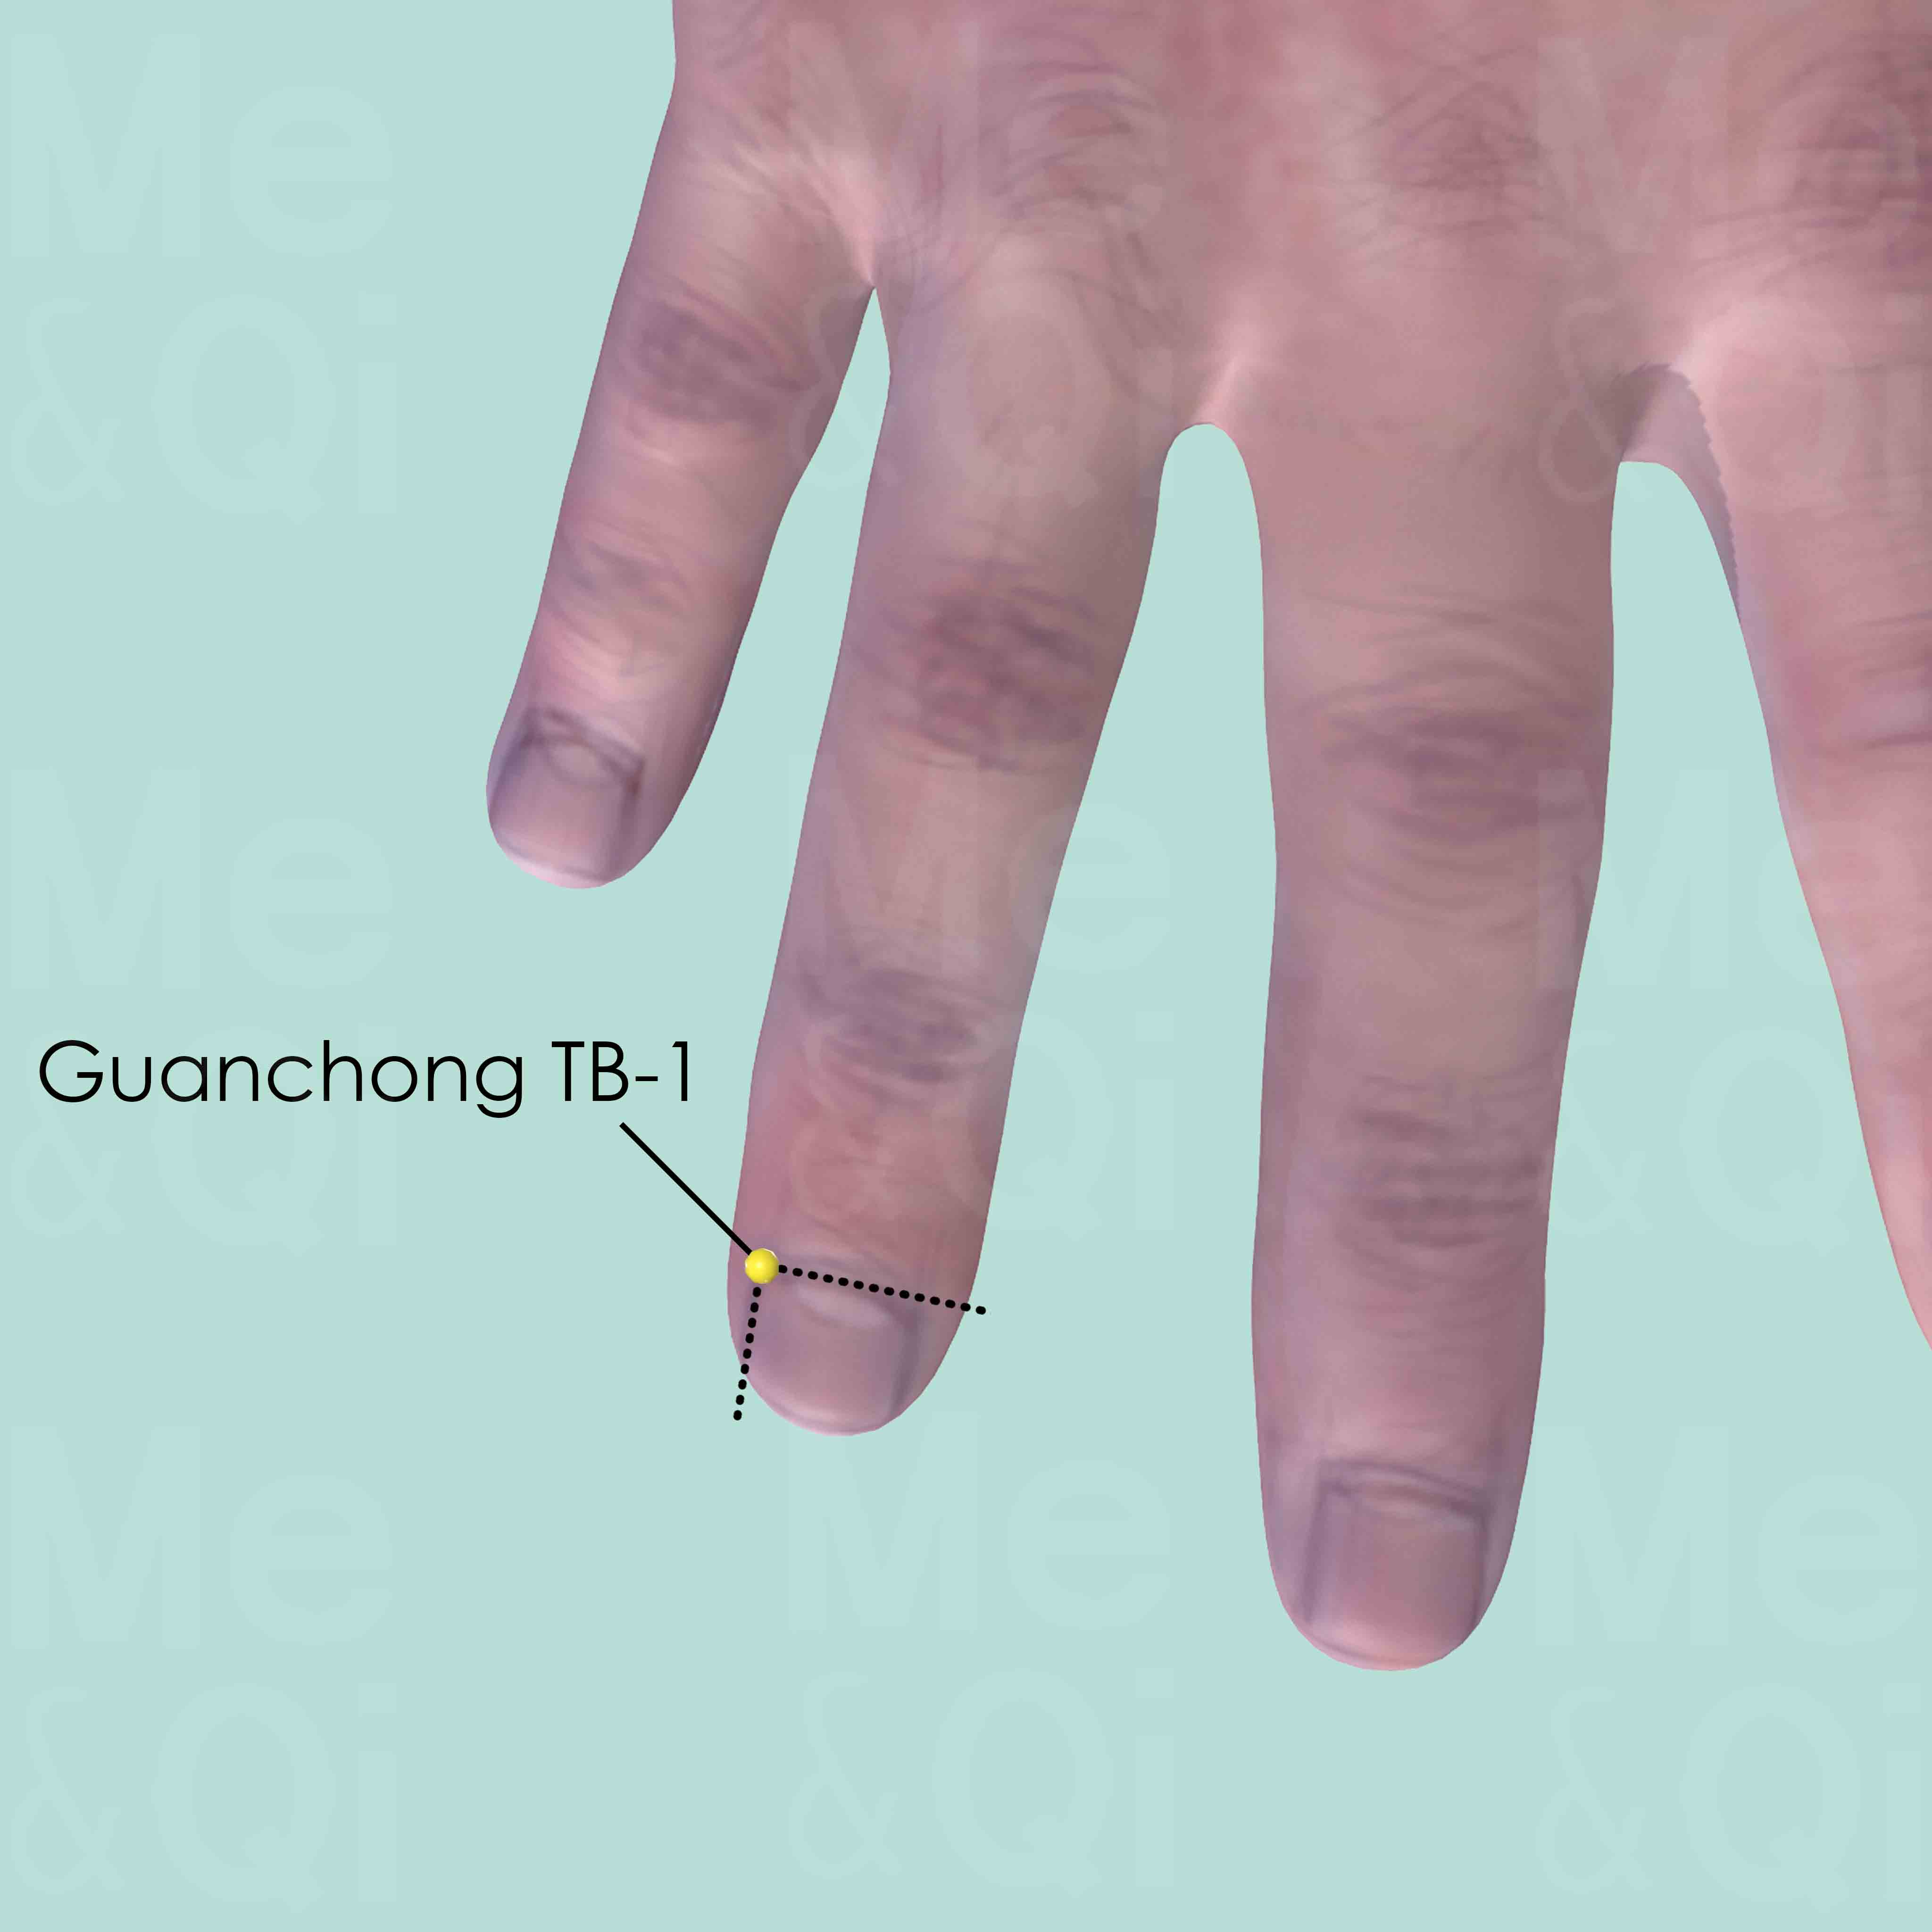 Guanchong TB-1